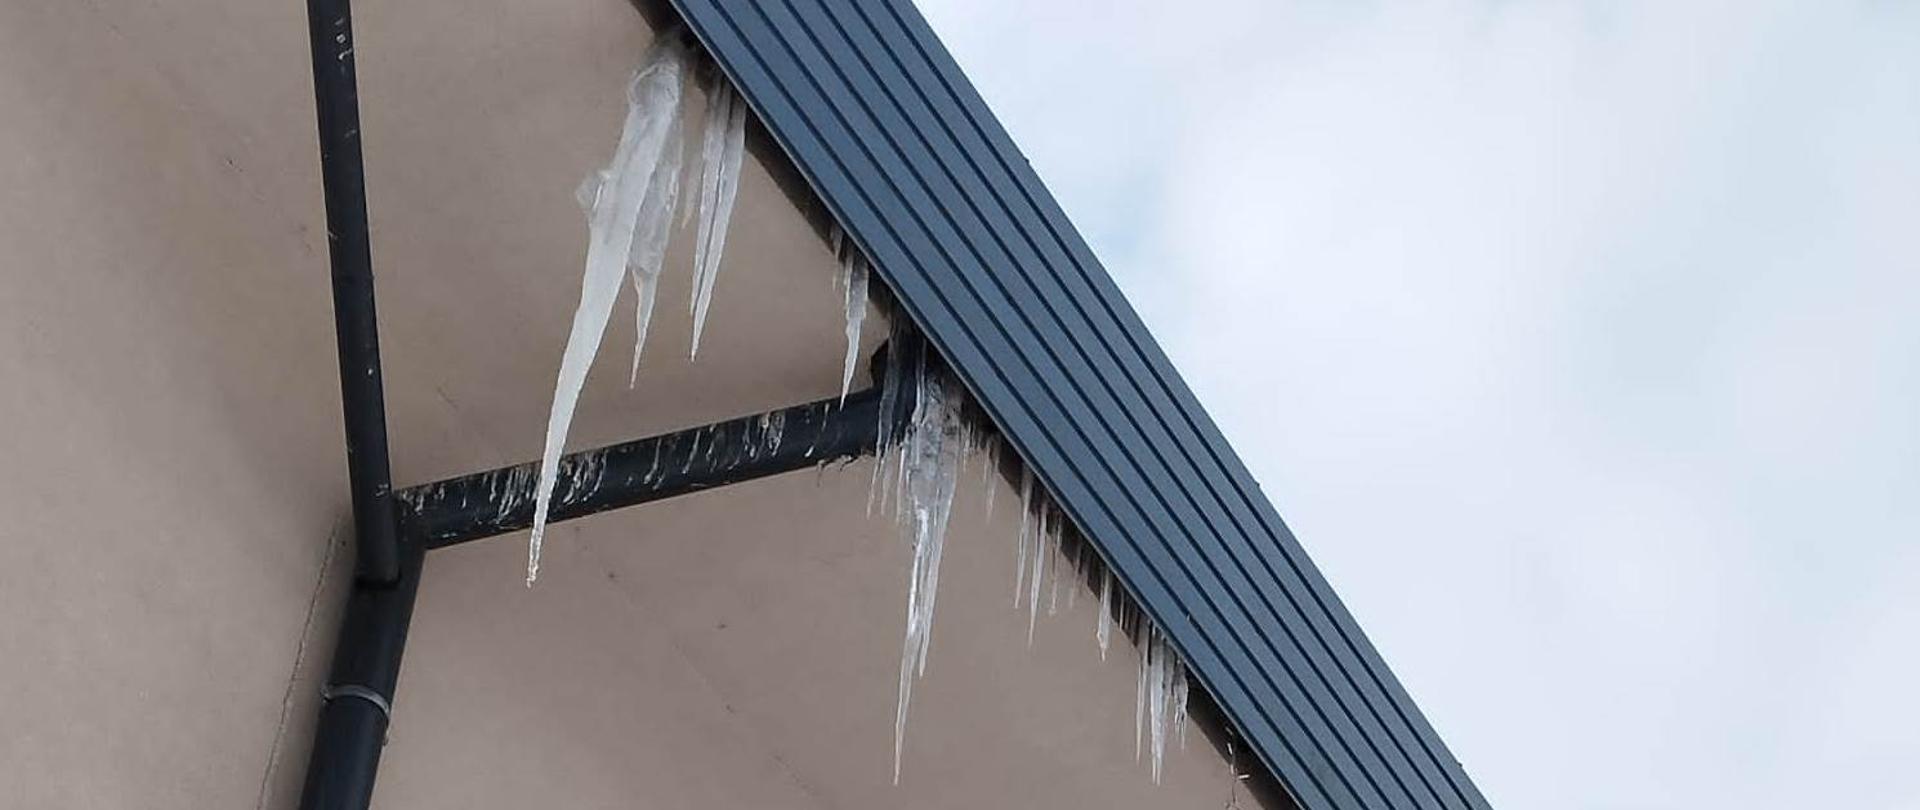 Z dachu budynku zwisają sople lodowe. 